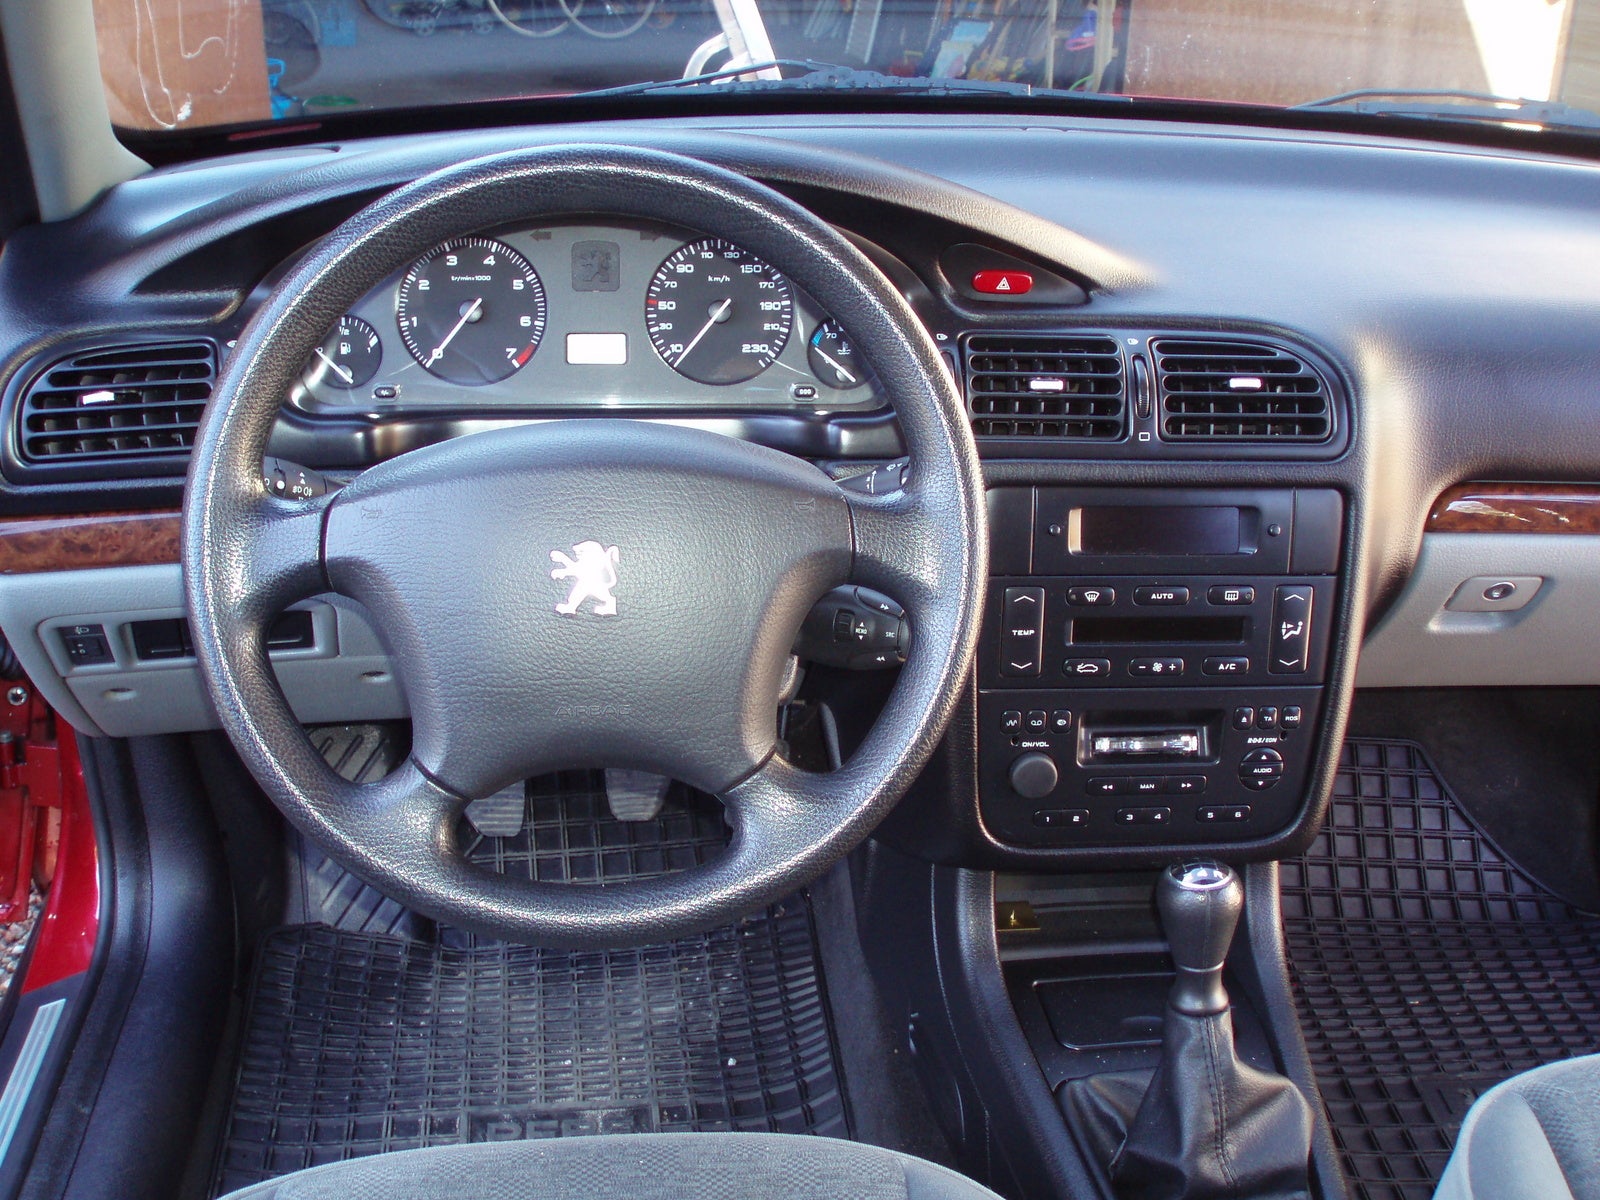 2001 Peugeot 406 Interior Pictures CarGurus